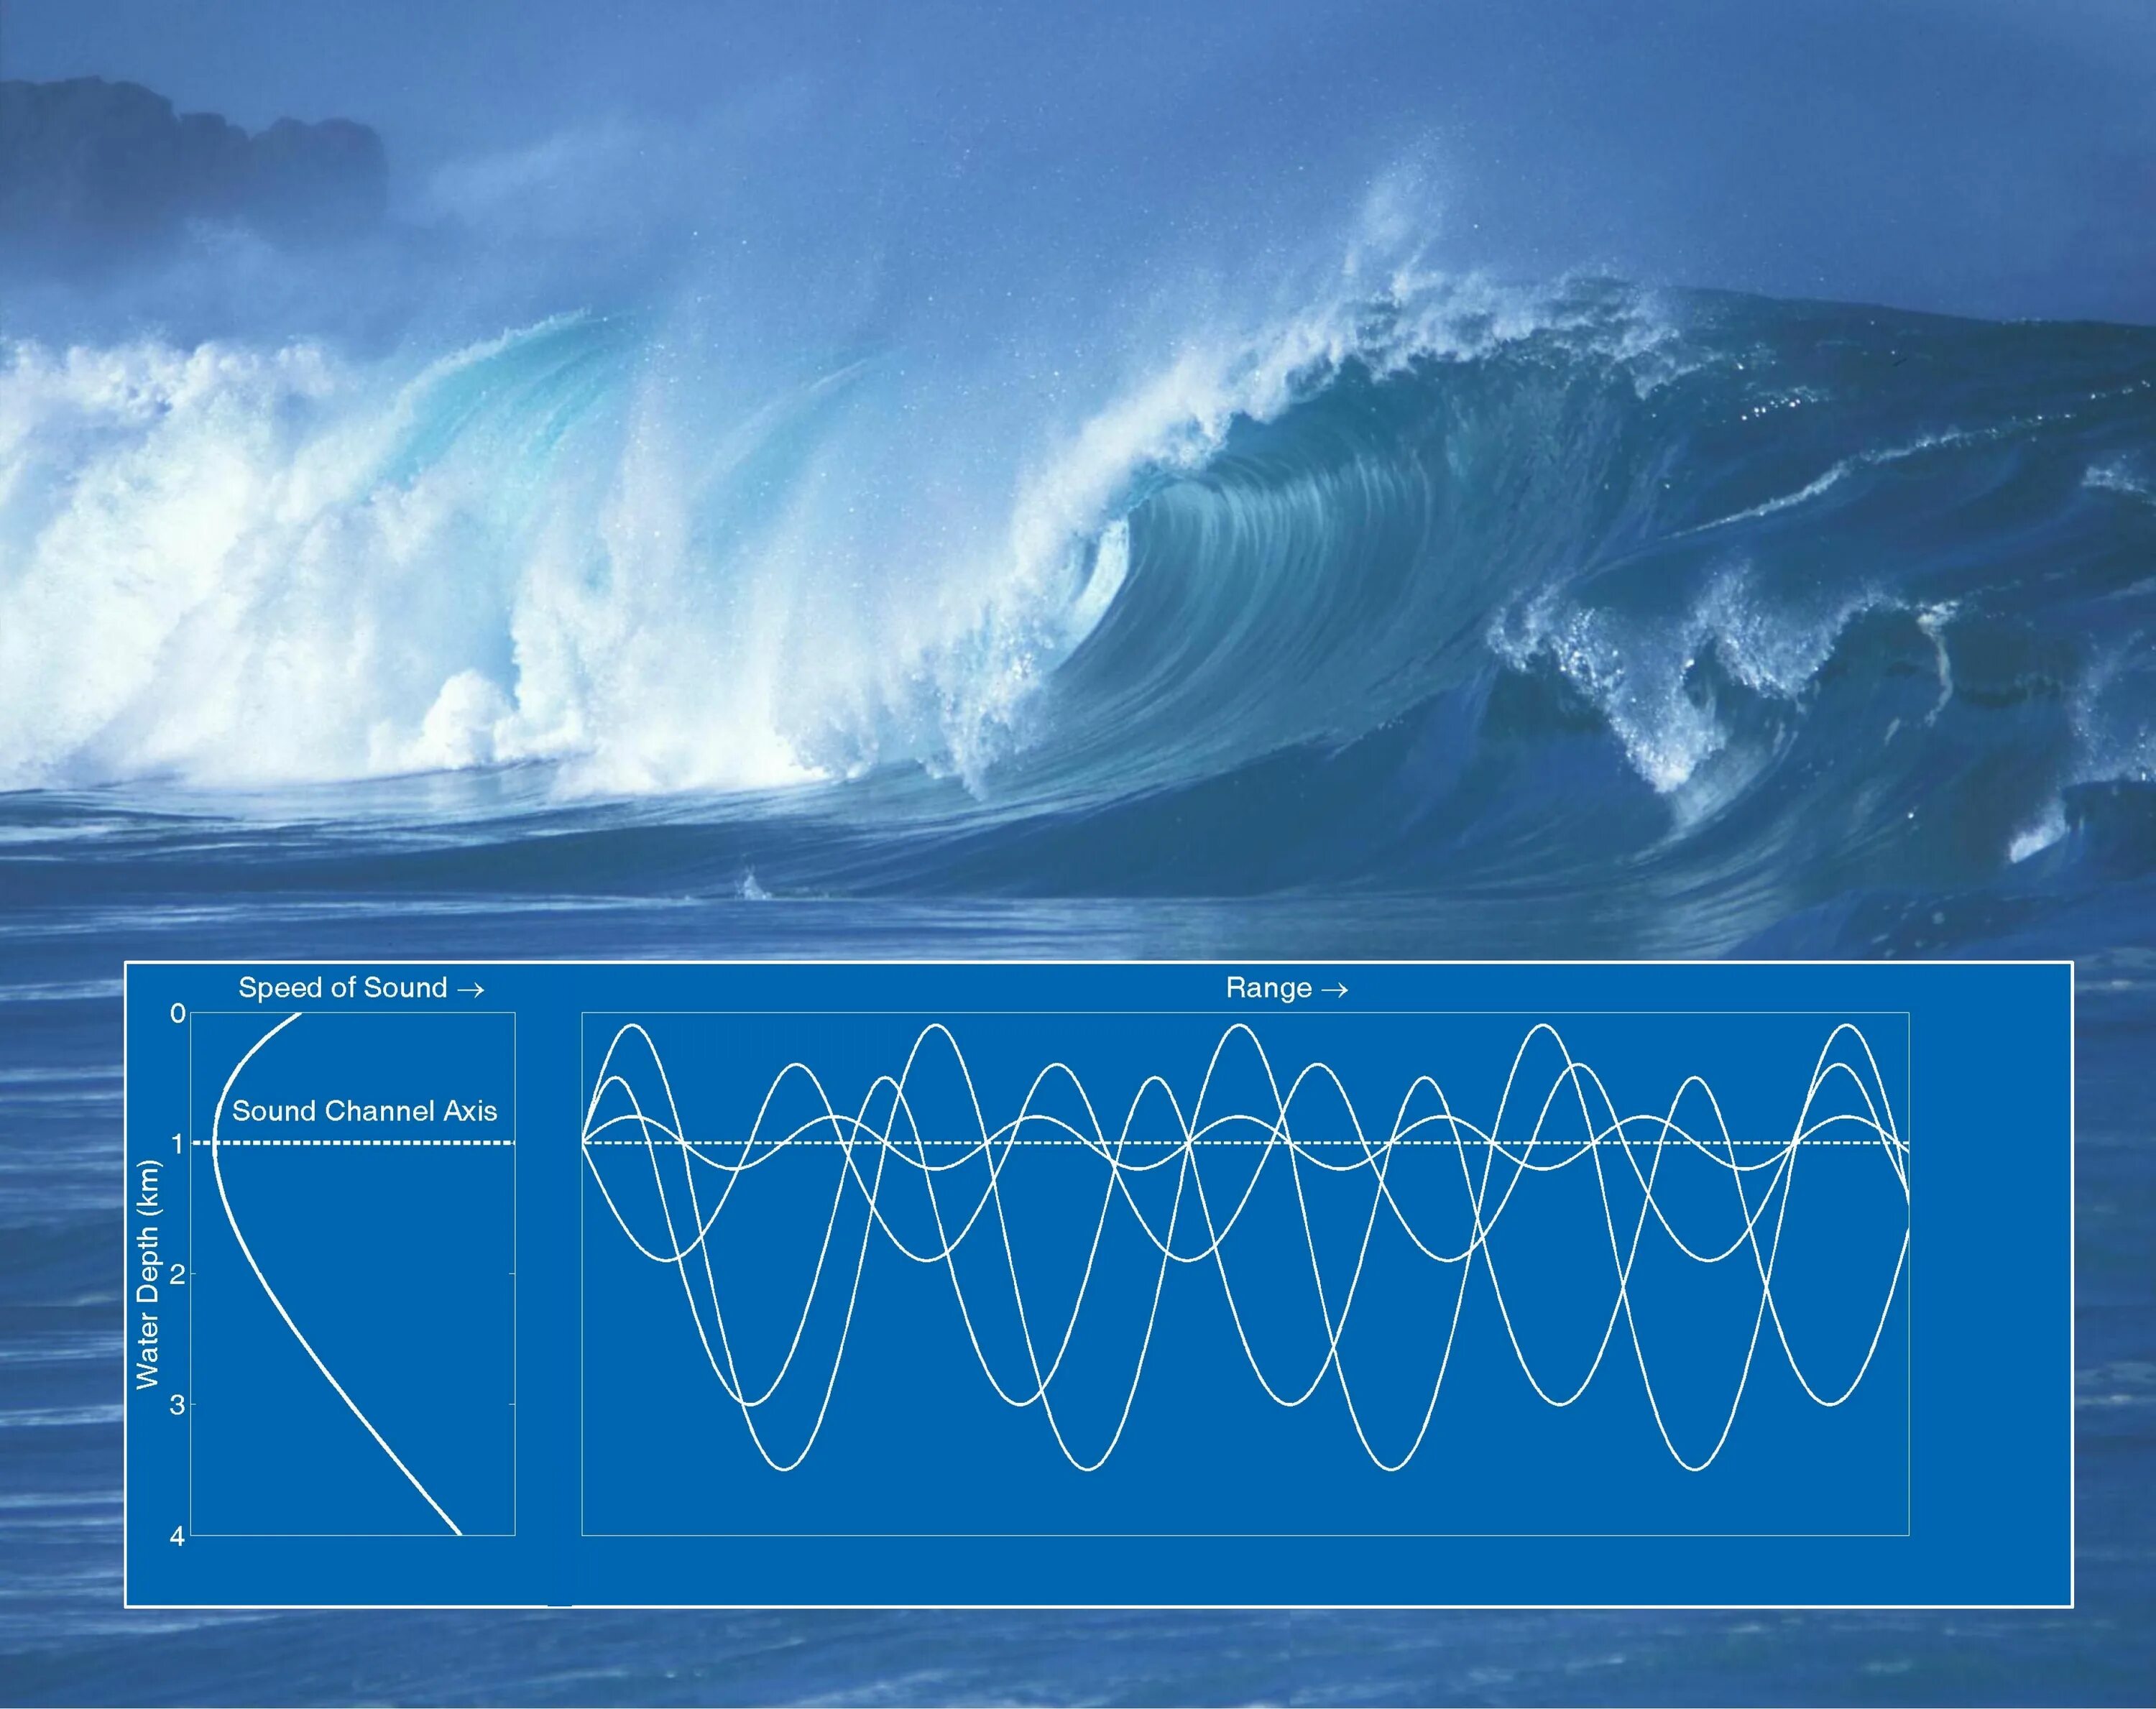 Spins waves waves. Звуковые волны в воде. Распространение звука в воде. Звуковая волна в воздухе. Звуковая волна в море.